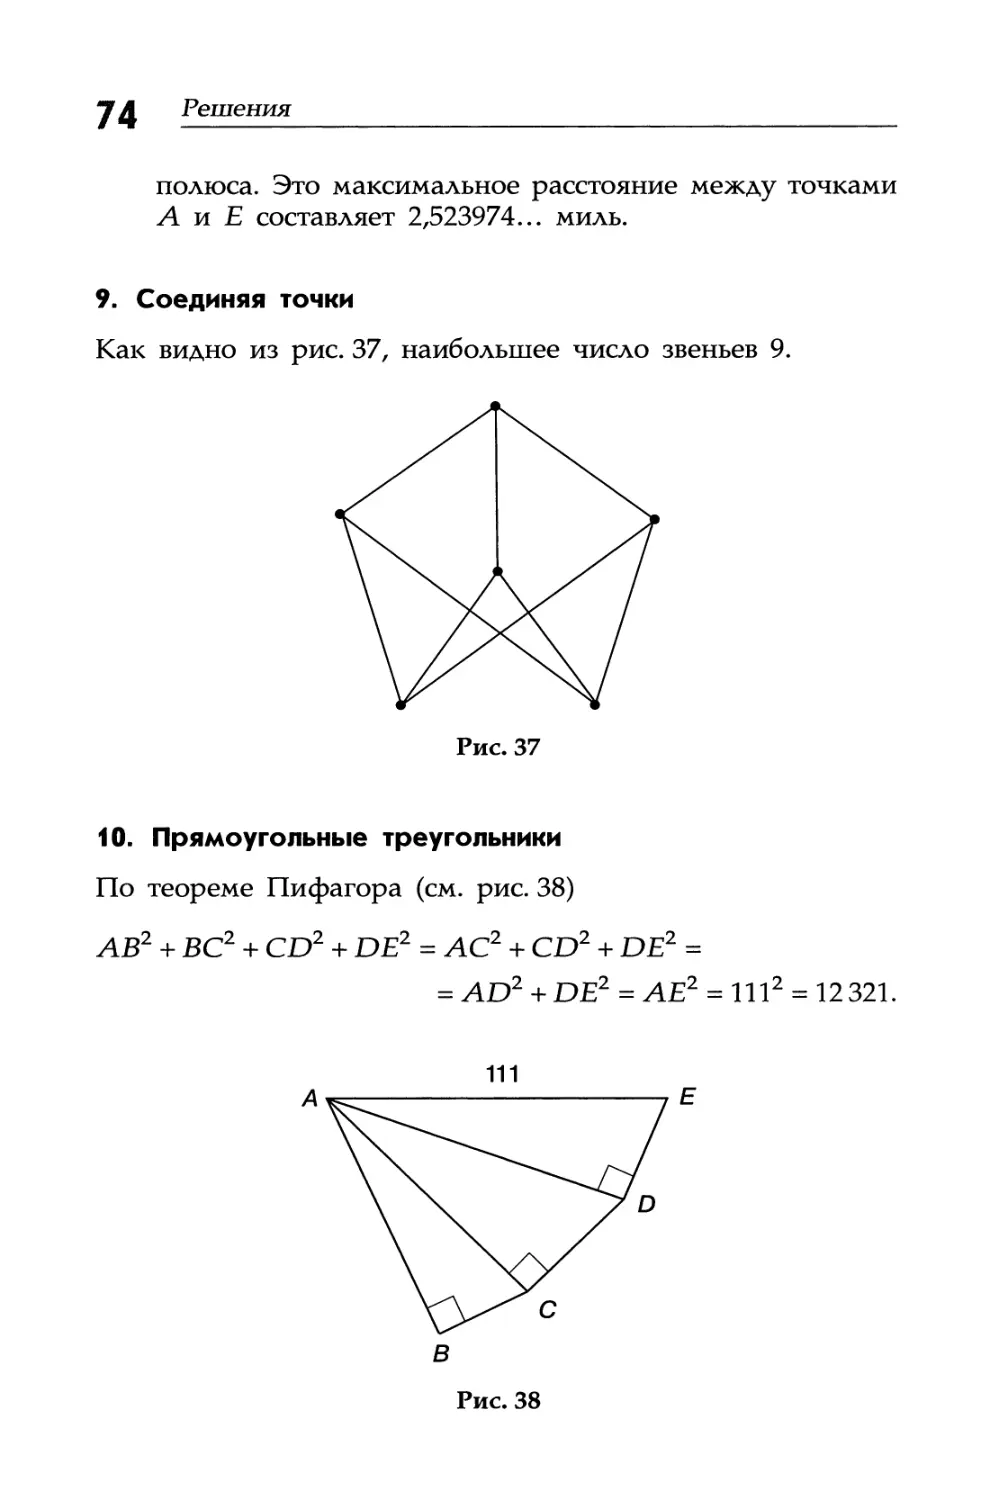 9. Соединяя точки
10. Прямоугольные треугольники